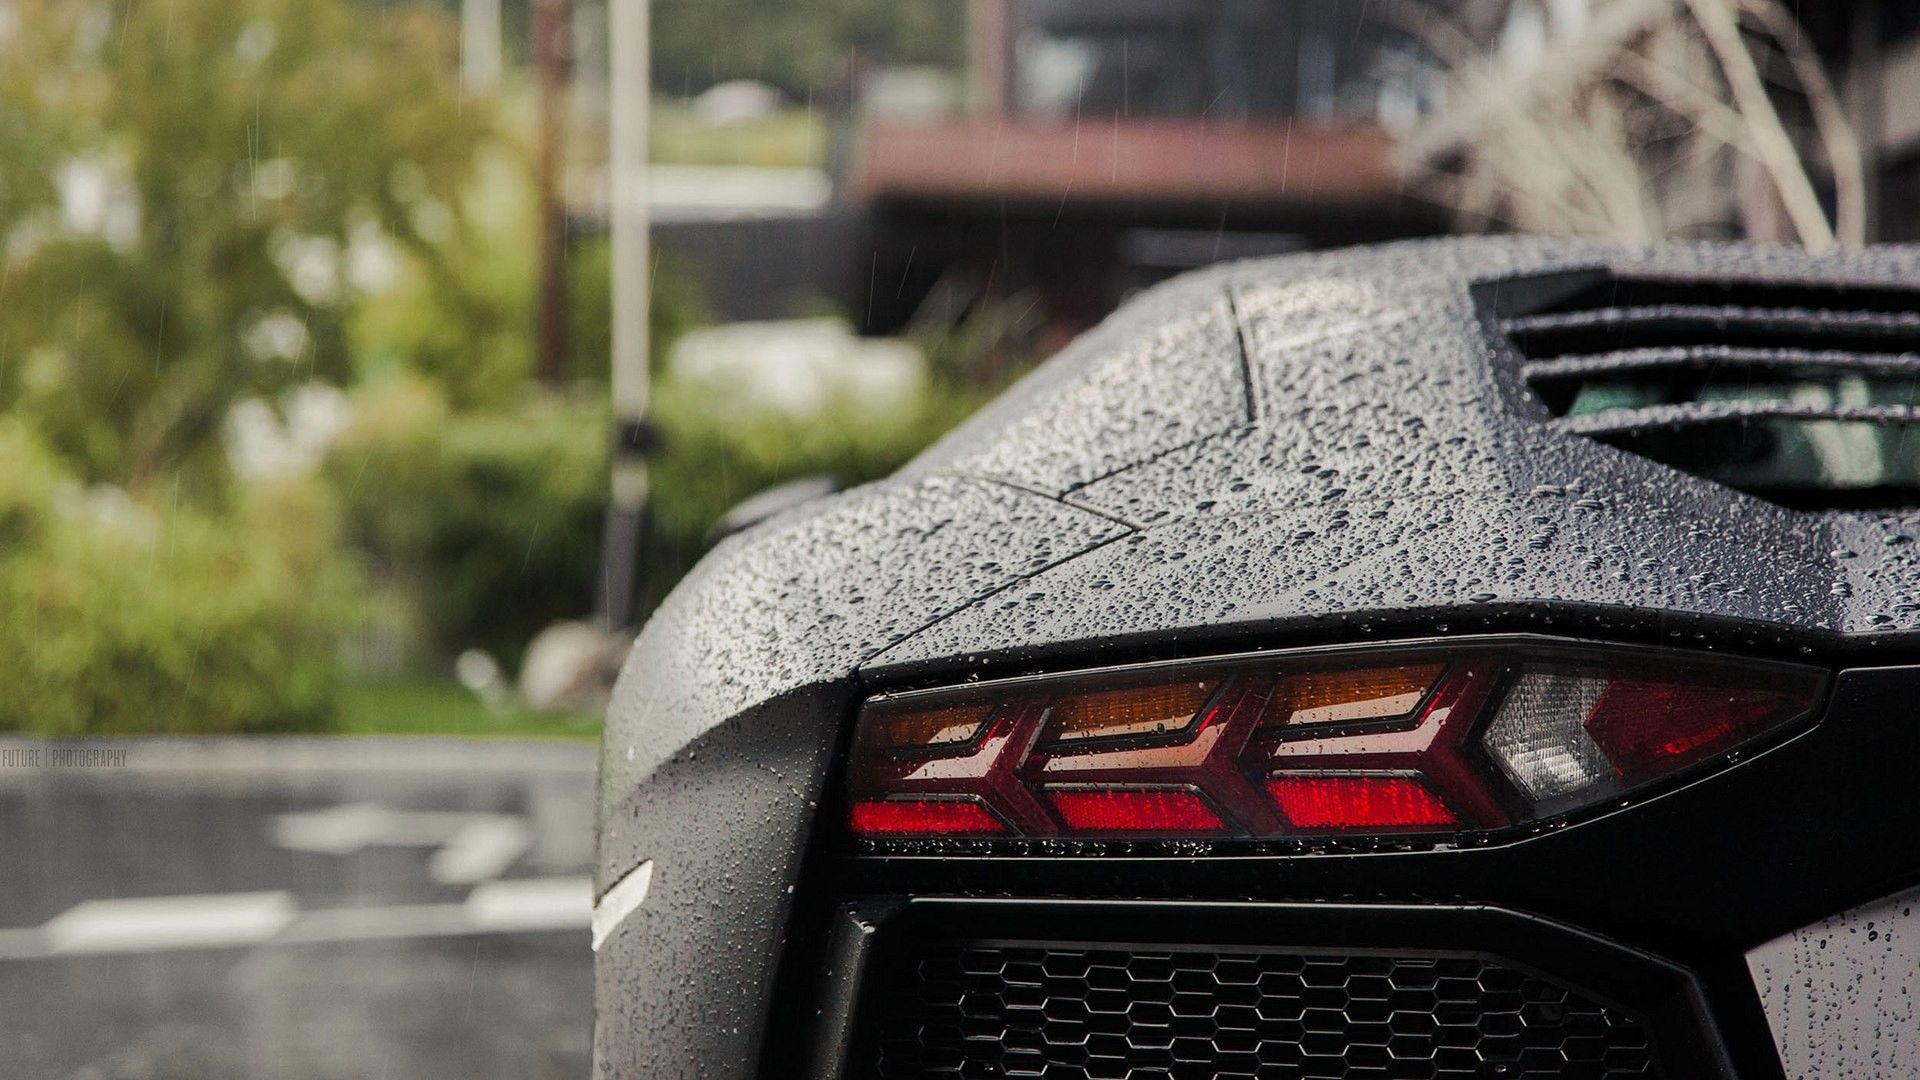 Lamborghini Aventador LP 750 Rain, Black cars, Water drops, Lamborghini, Vehicle, Lamborghini Aventador Wallpaper HD / Desktop and Mobile Background